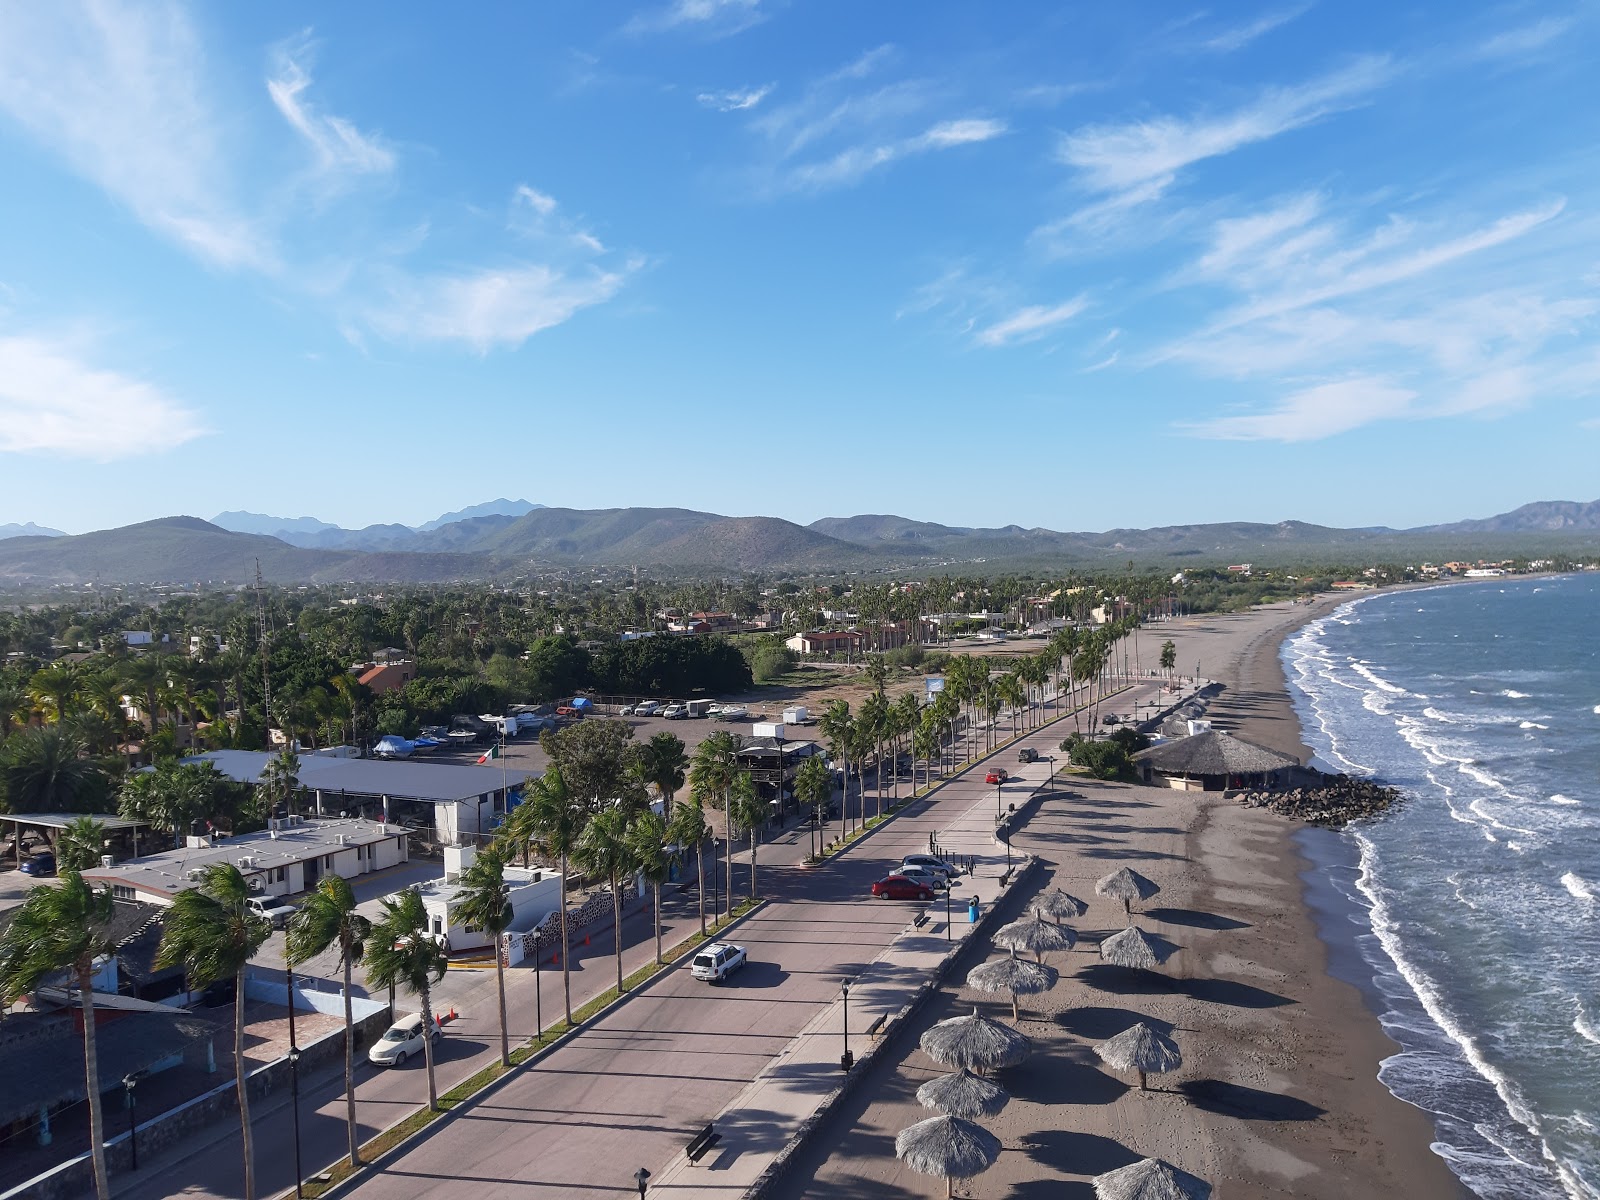 Playa La Negrita'in fotoğrafı geniş plaj ile birlikte